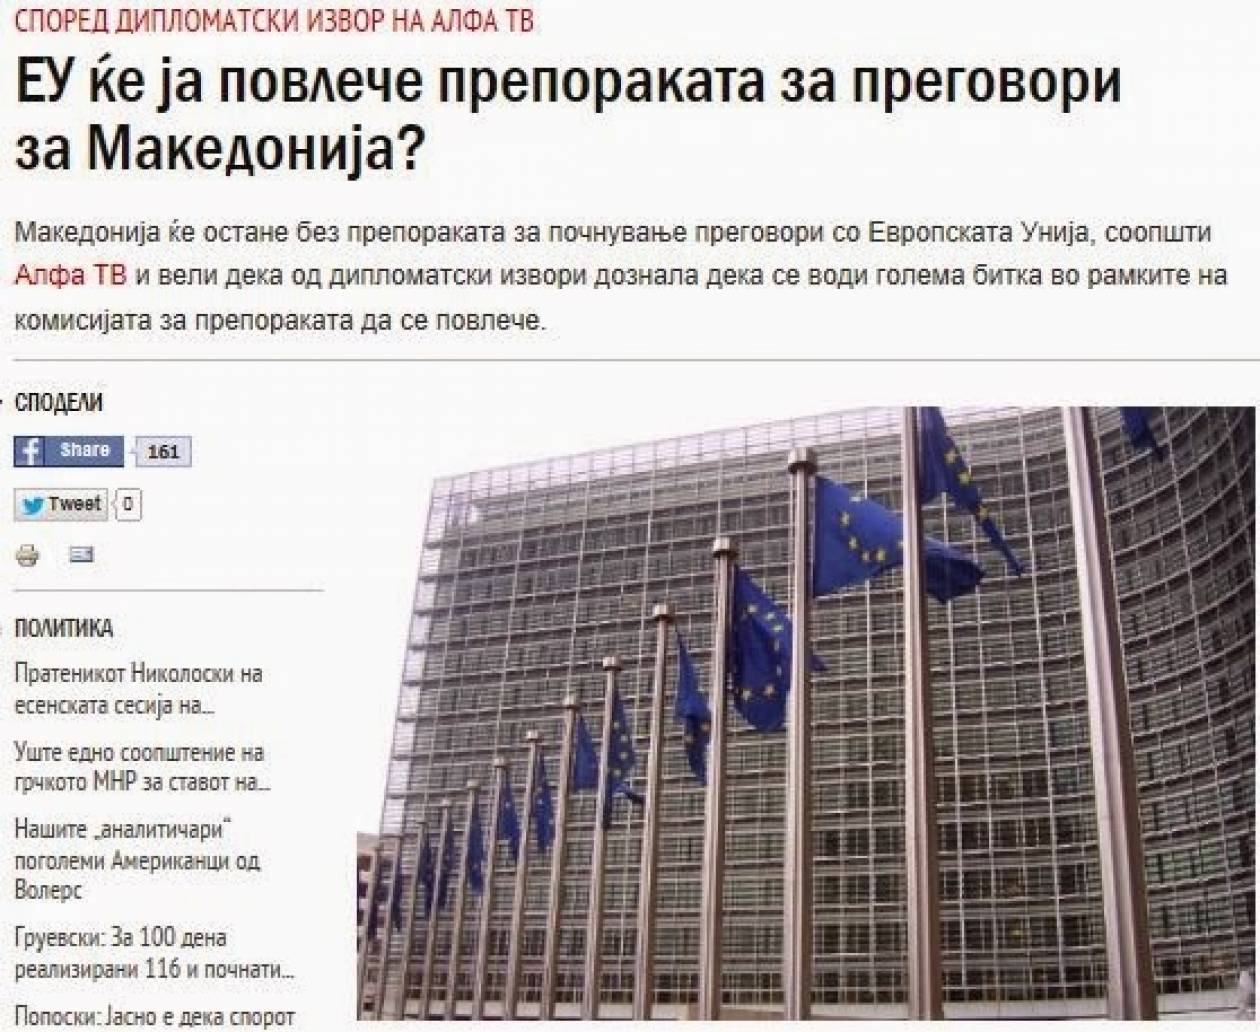 Σκόπια: Η ΕΕ ενδέχεται να αποσύρει τη σύσταση για διαπραγματεύσεις για τα Σκόπια